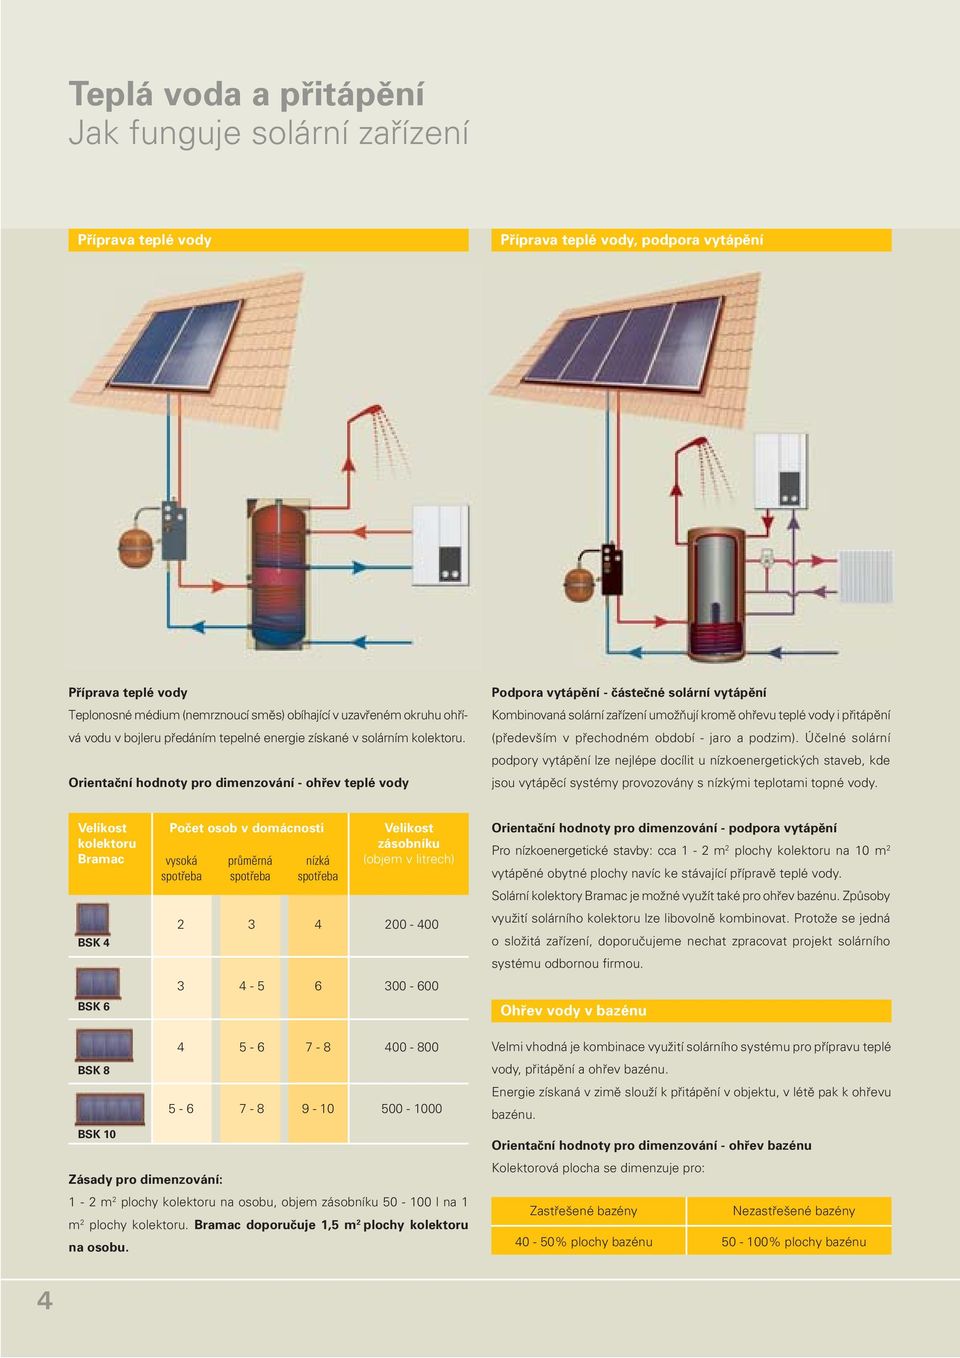 Orientační hodnoty pro dimenzování - ohřev teplé vody Podpora vytápění - částečné solární vytápění Kombinovaná solární zařízení umožňují kromě ohřevu teplé vody i přitápění (především v přechodném